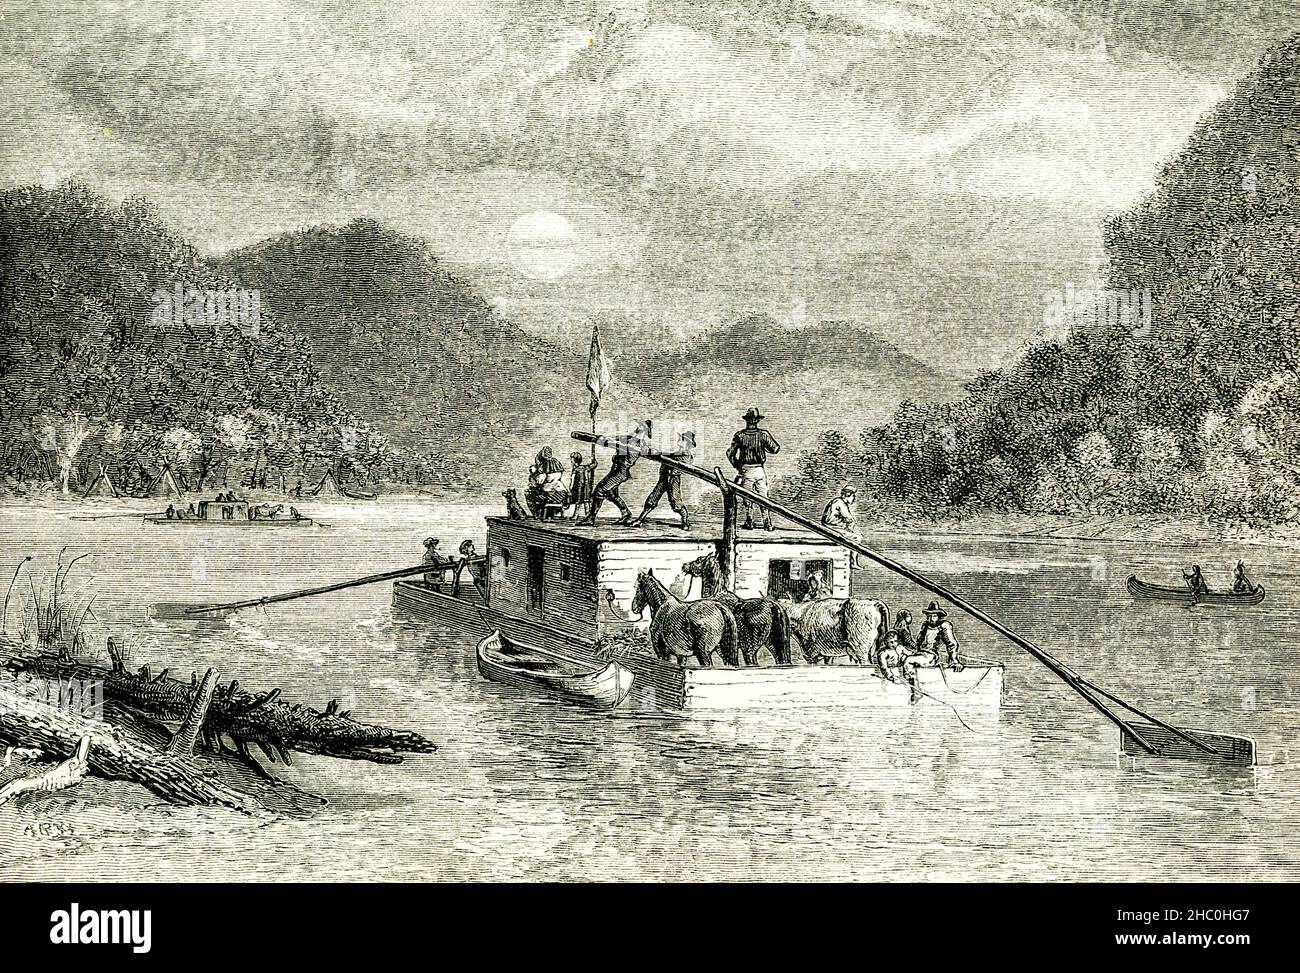 Cette illustration de 1890 montre les émigrants descendant de la rivière Tennessee à l'époque de l'expansion de Westward aux États-Unis,. Banque D'Images